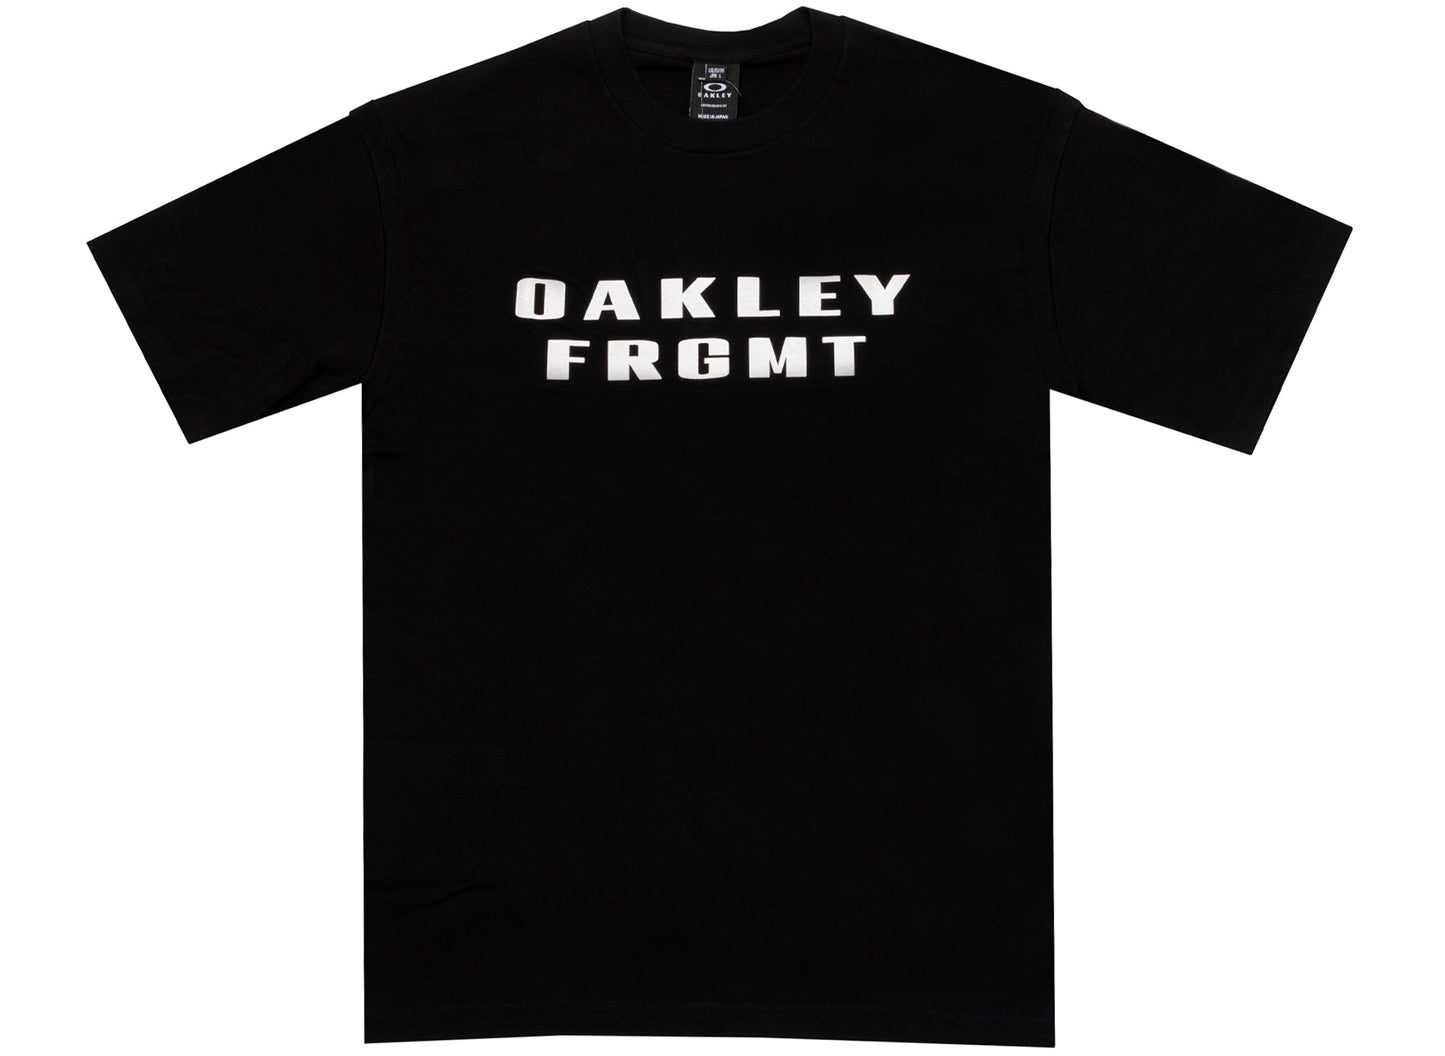 Oakley x Fragment S/S Tee in Black